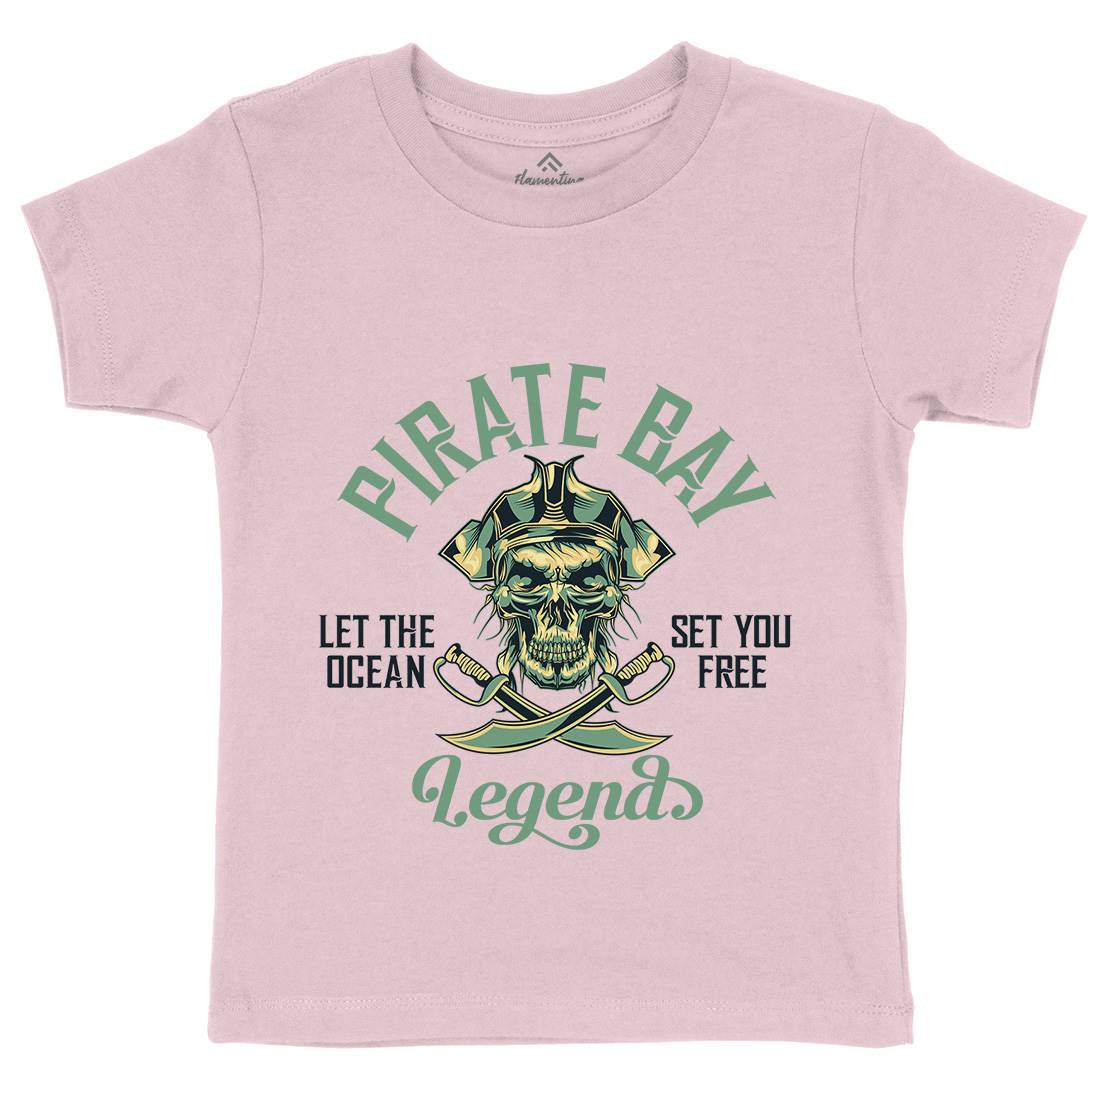 Pirate Kids Organic Crew Neck T-Shirt Navy B161